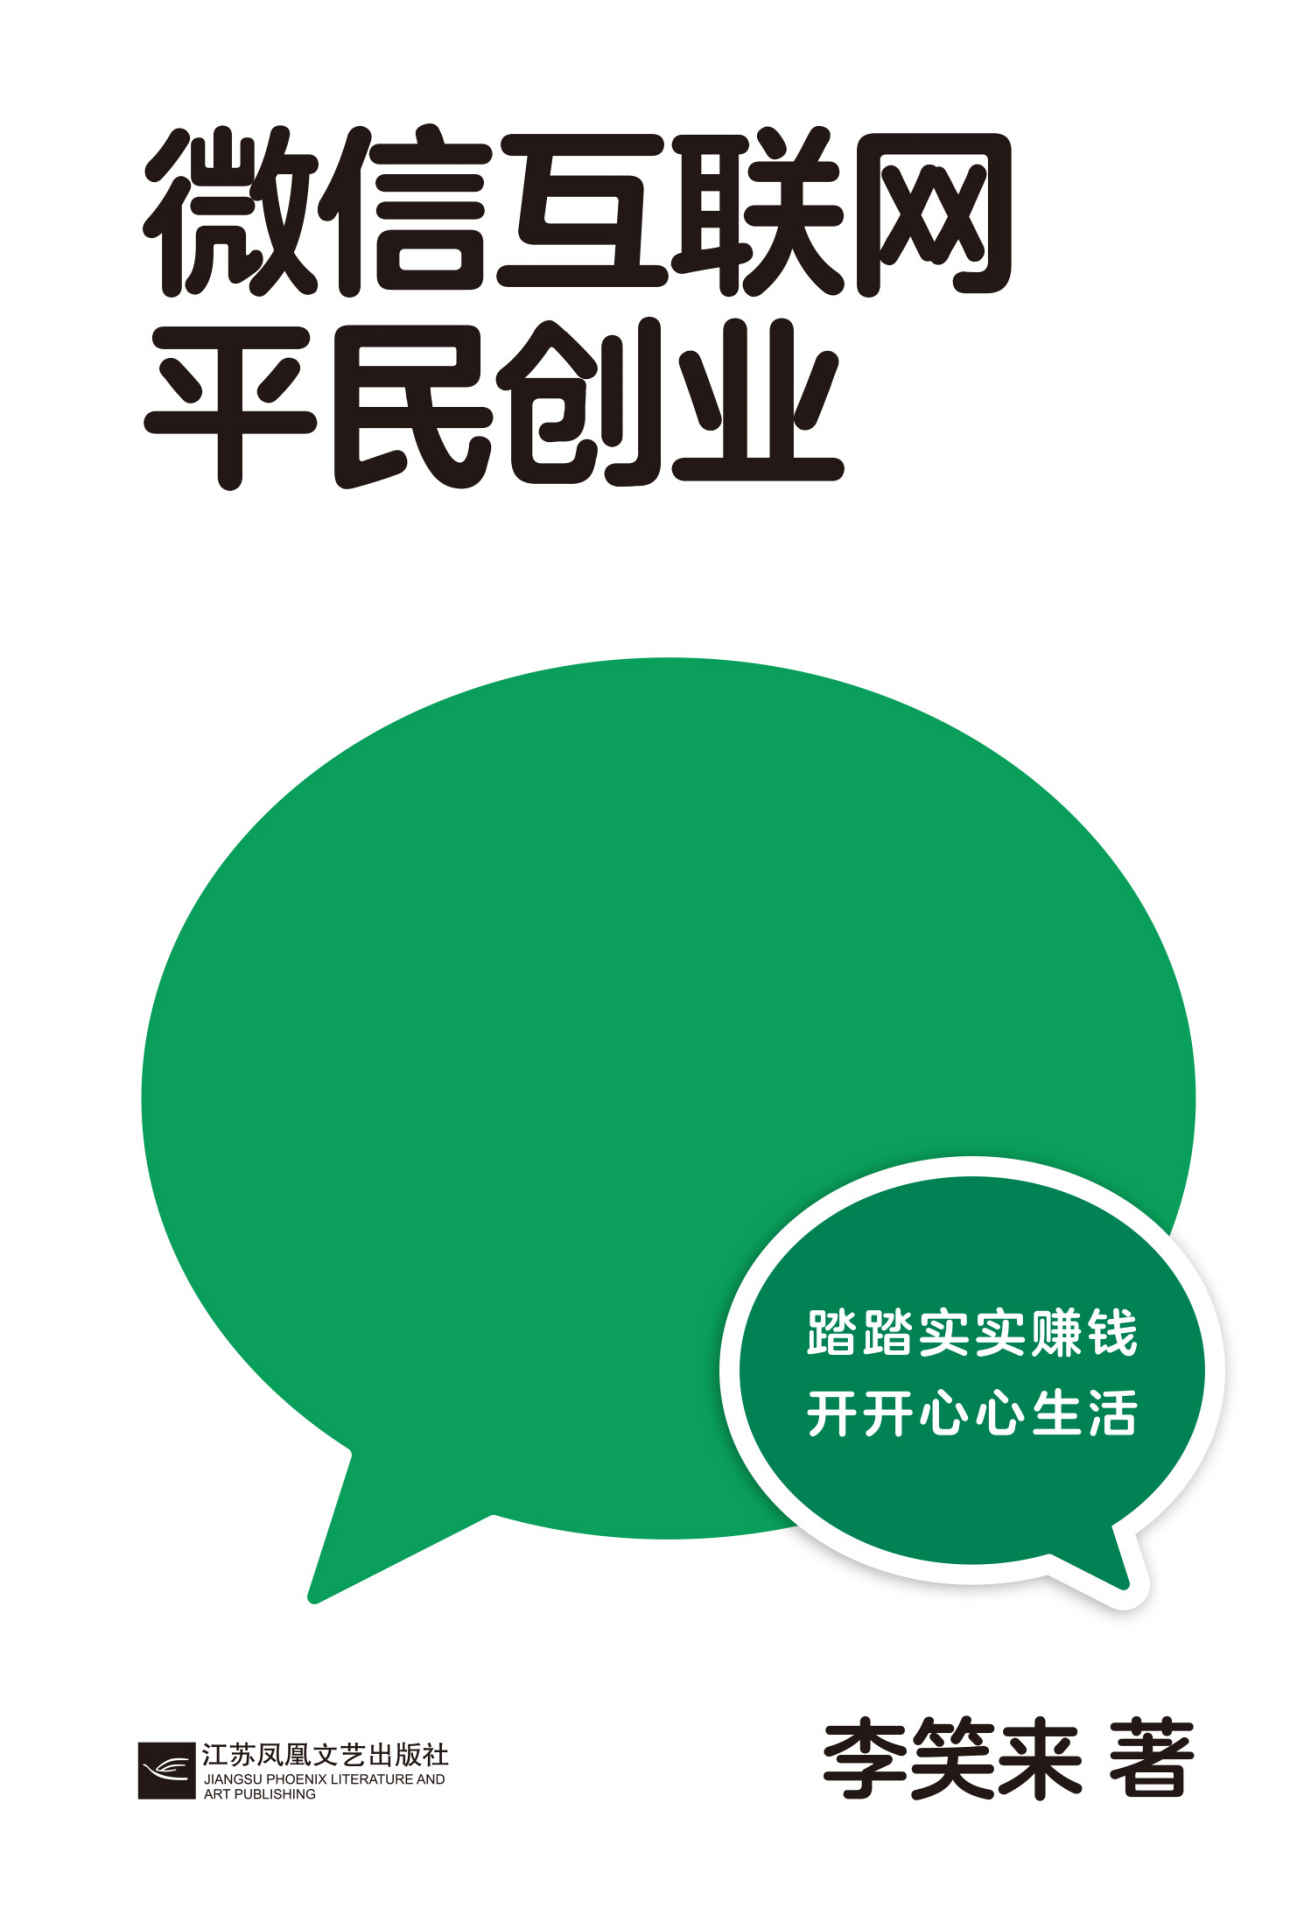 微信互联网平民创业—李笑来—pdf+mobi+epub+txt+azw3电子书下载